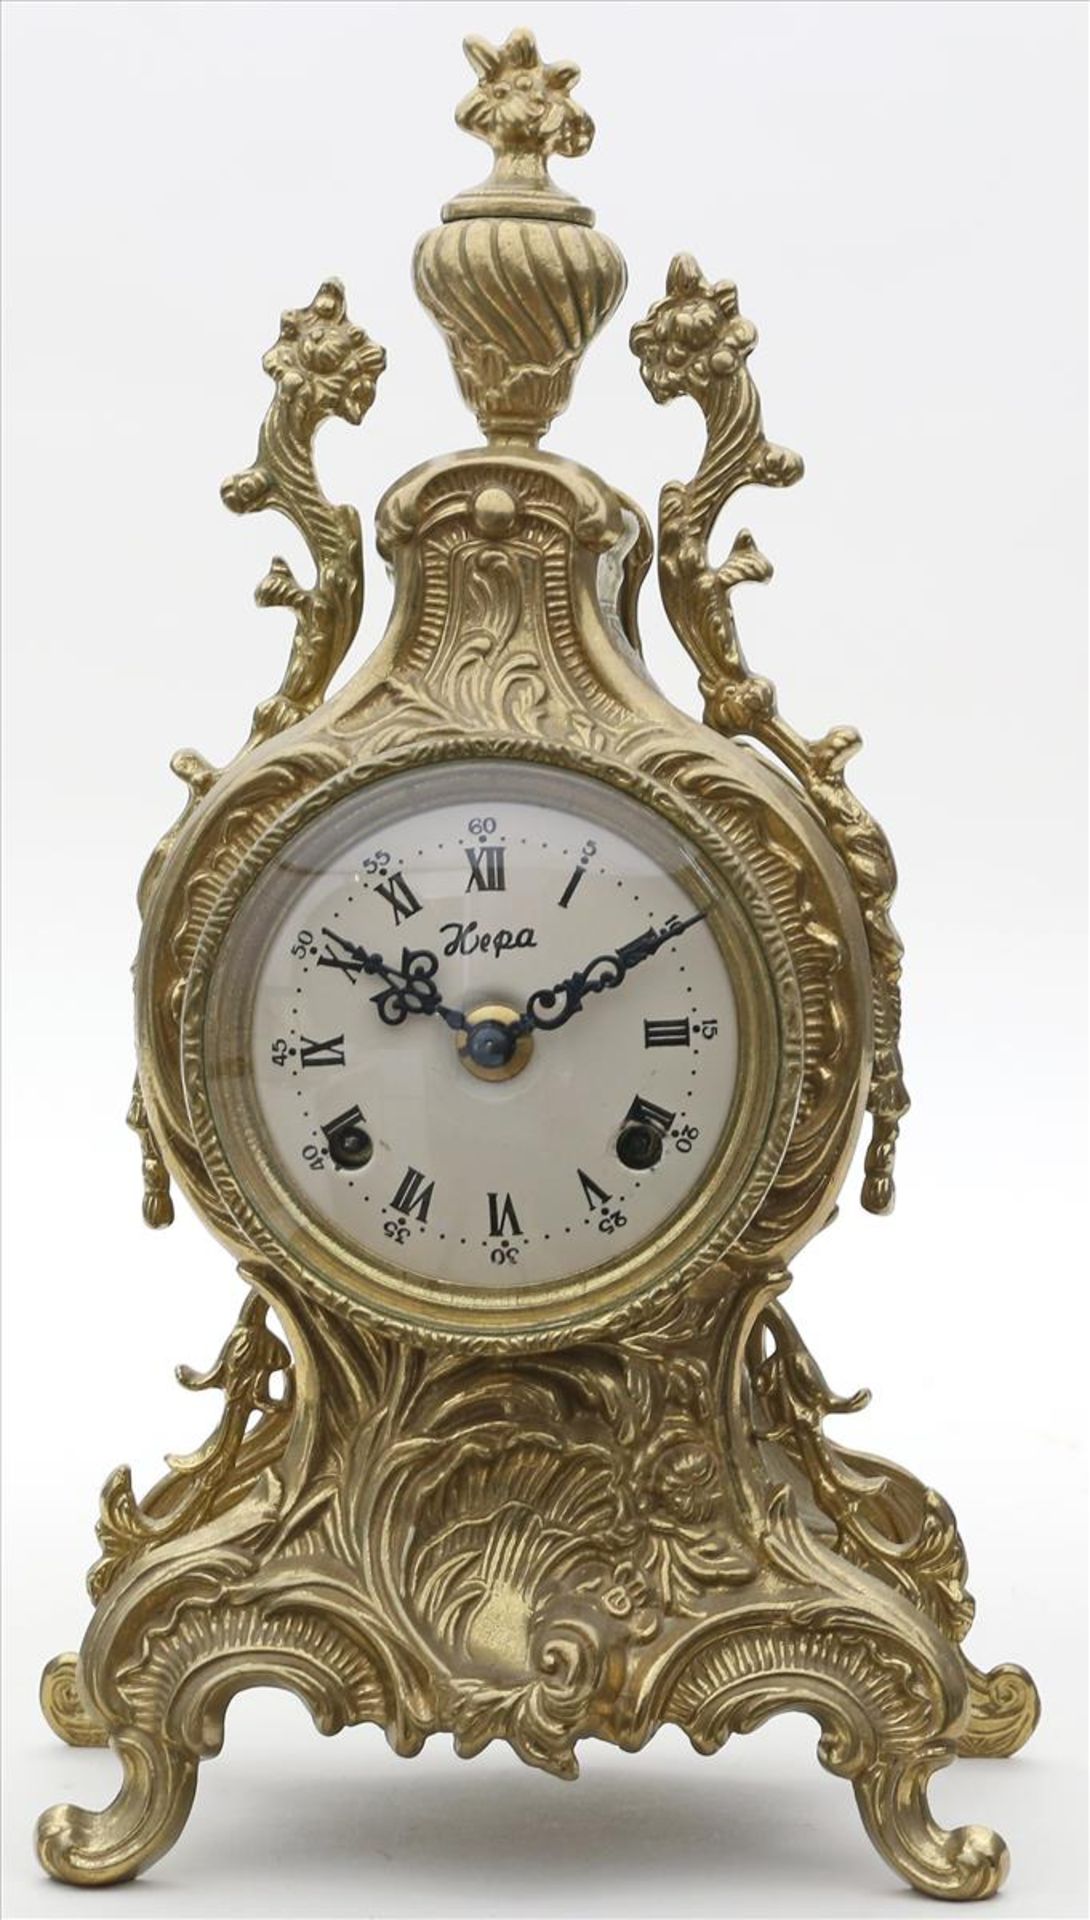 Pendule im Stil Louis XV.Rocaillenförmiges Gehäuse, vergoldet. Auf 4 Rocaillenfüßen. Rundes